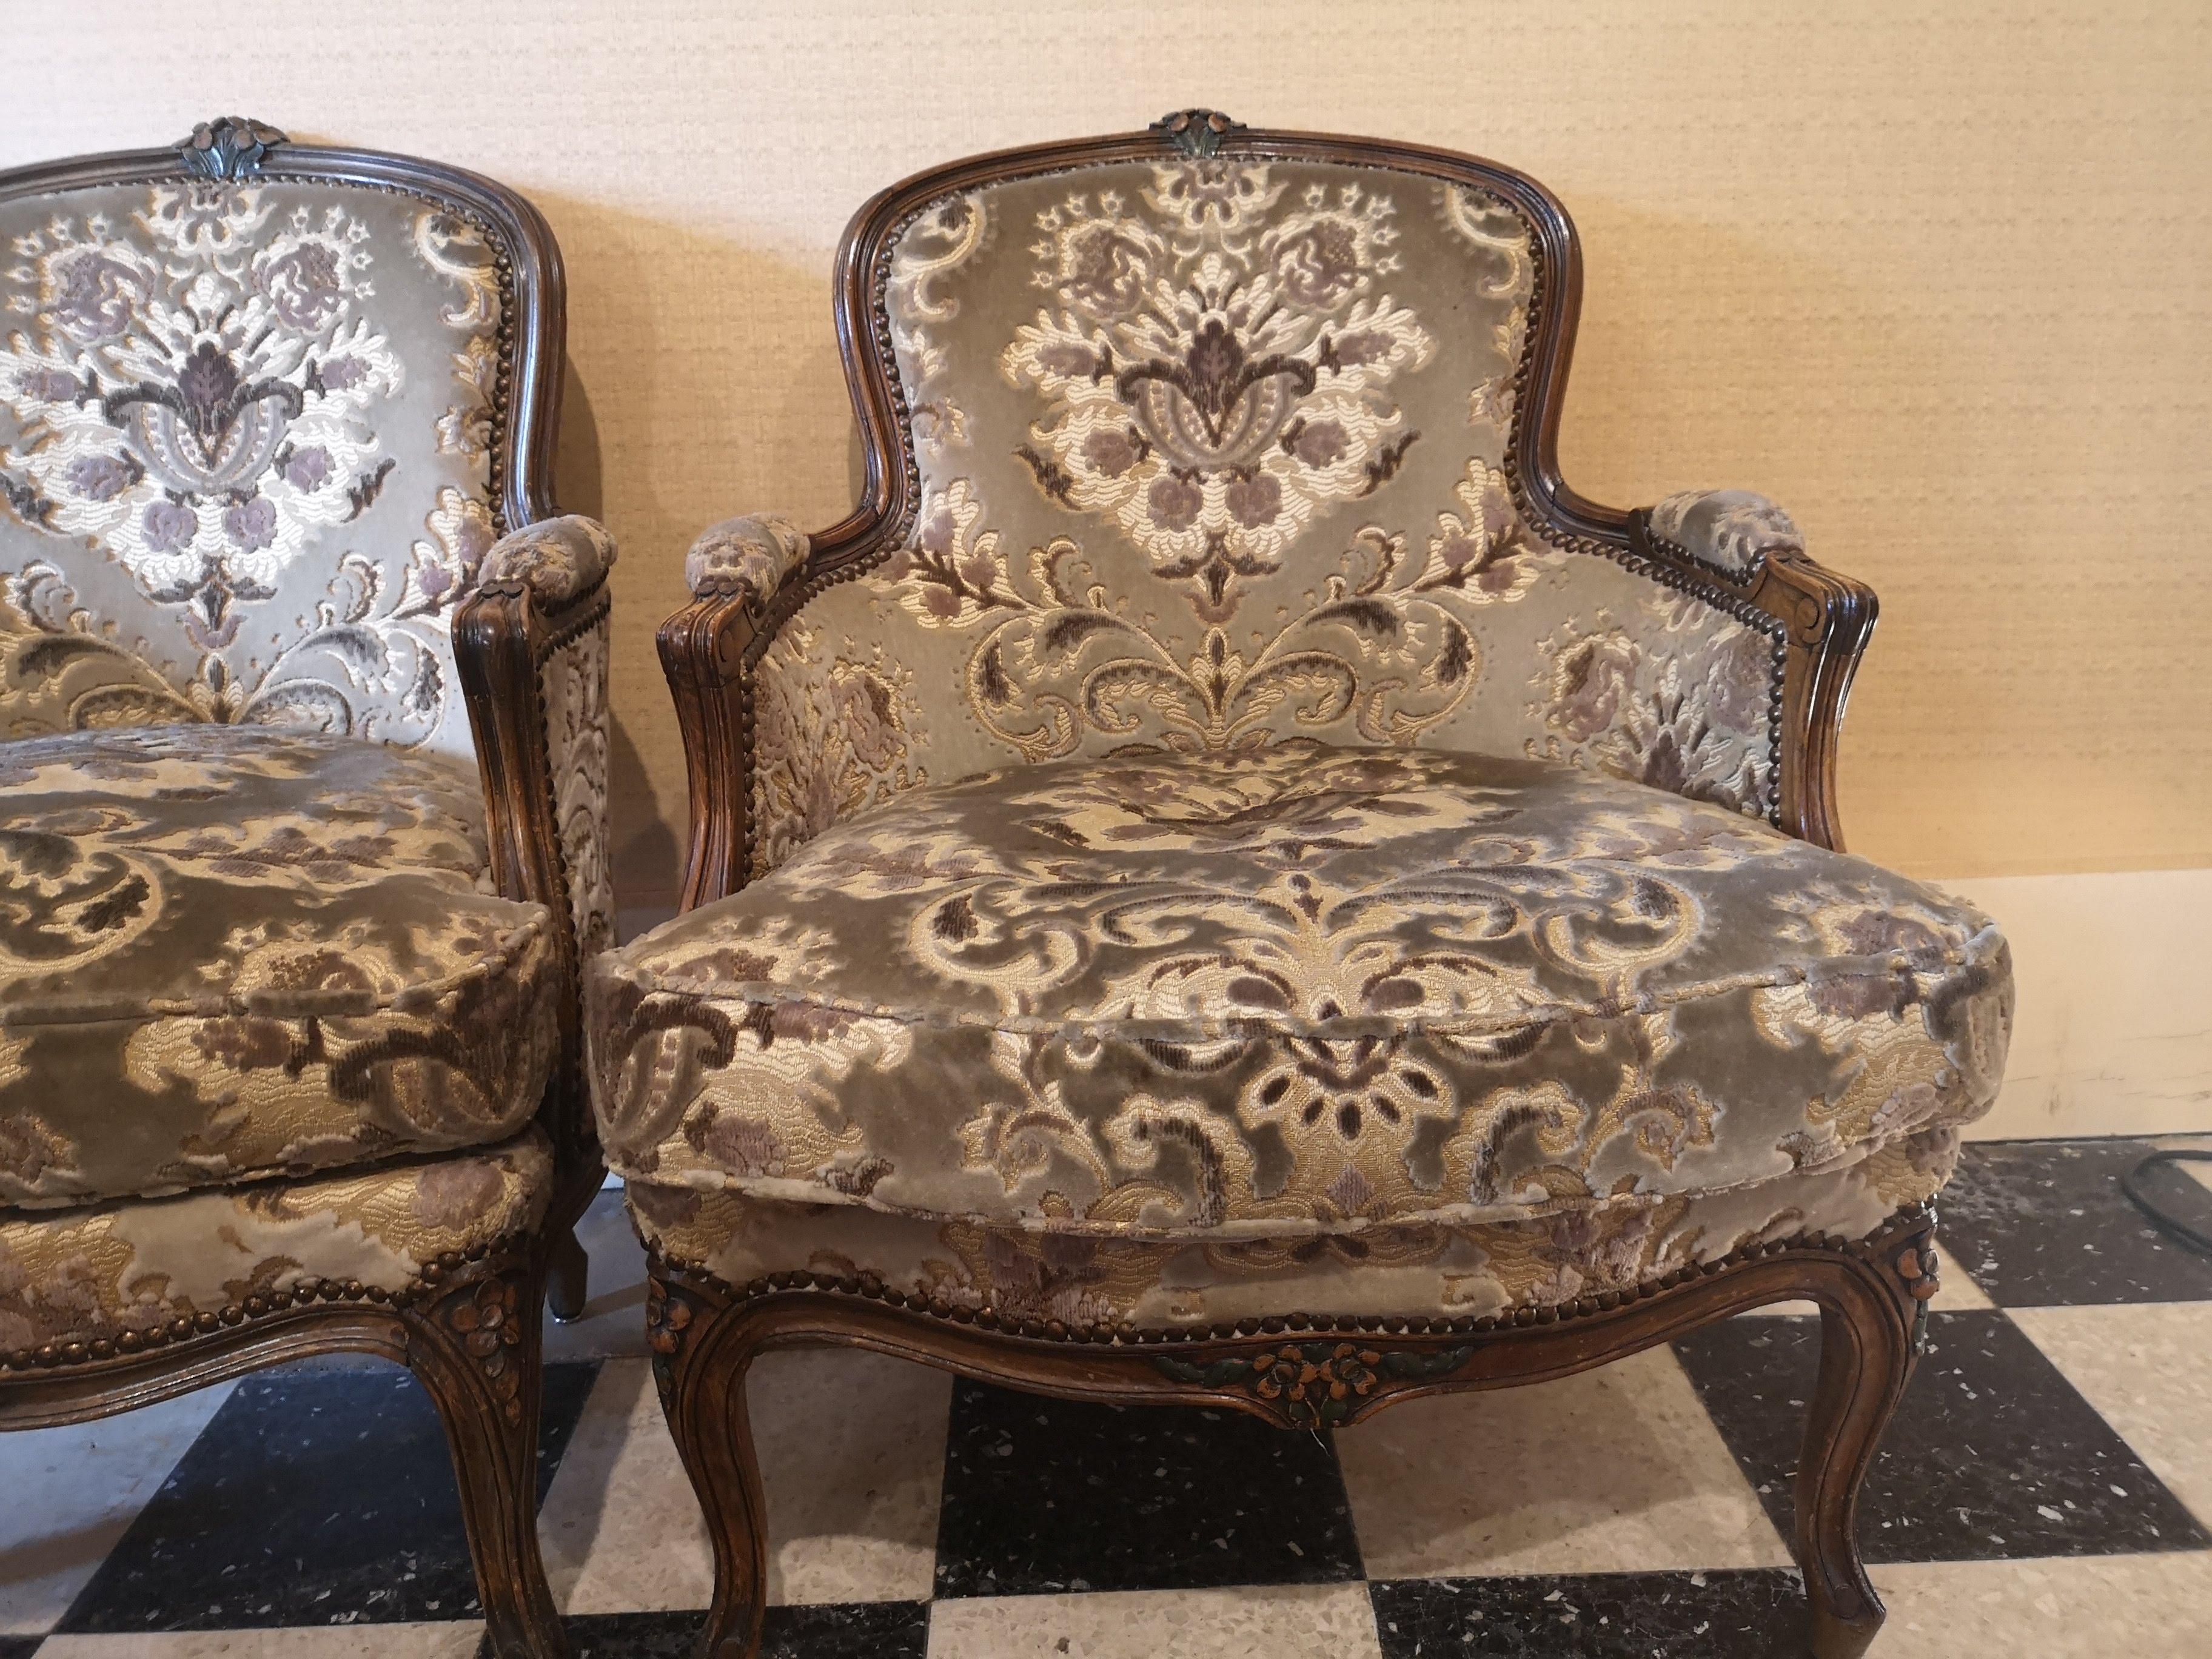 Paire de fauteuils bergère en bois naturel du 20ème siècle.
Le tissu et les coussins sont d'époque et en bon état.
Les sièges sont moulés et sculptés, le dossier est incurvé pour plus de confort.